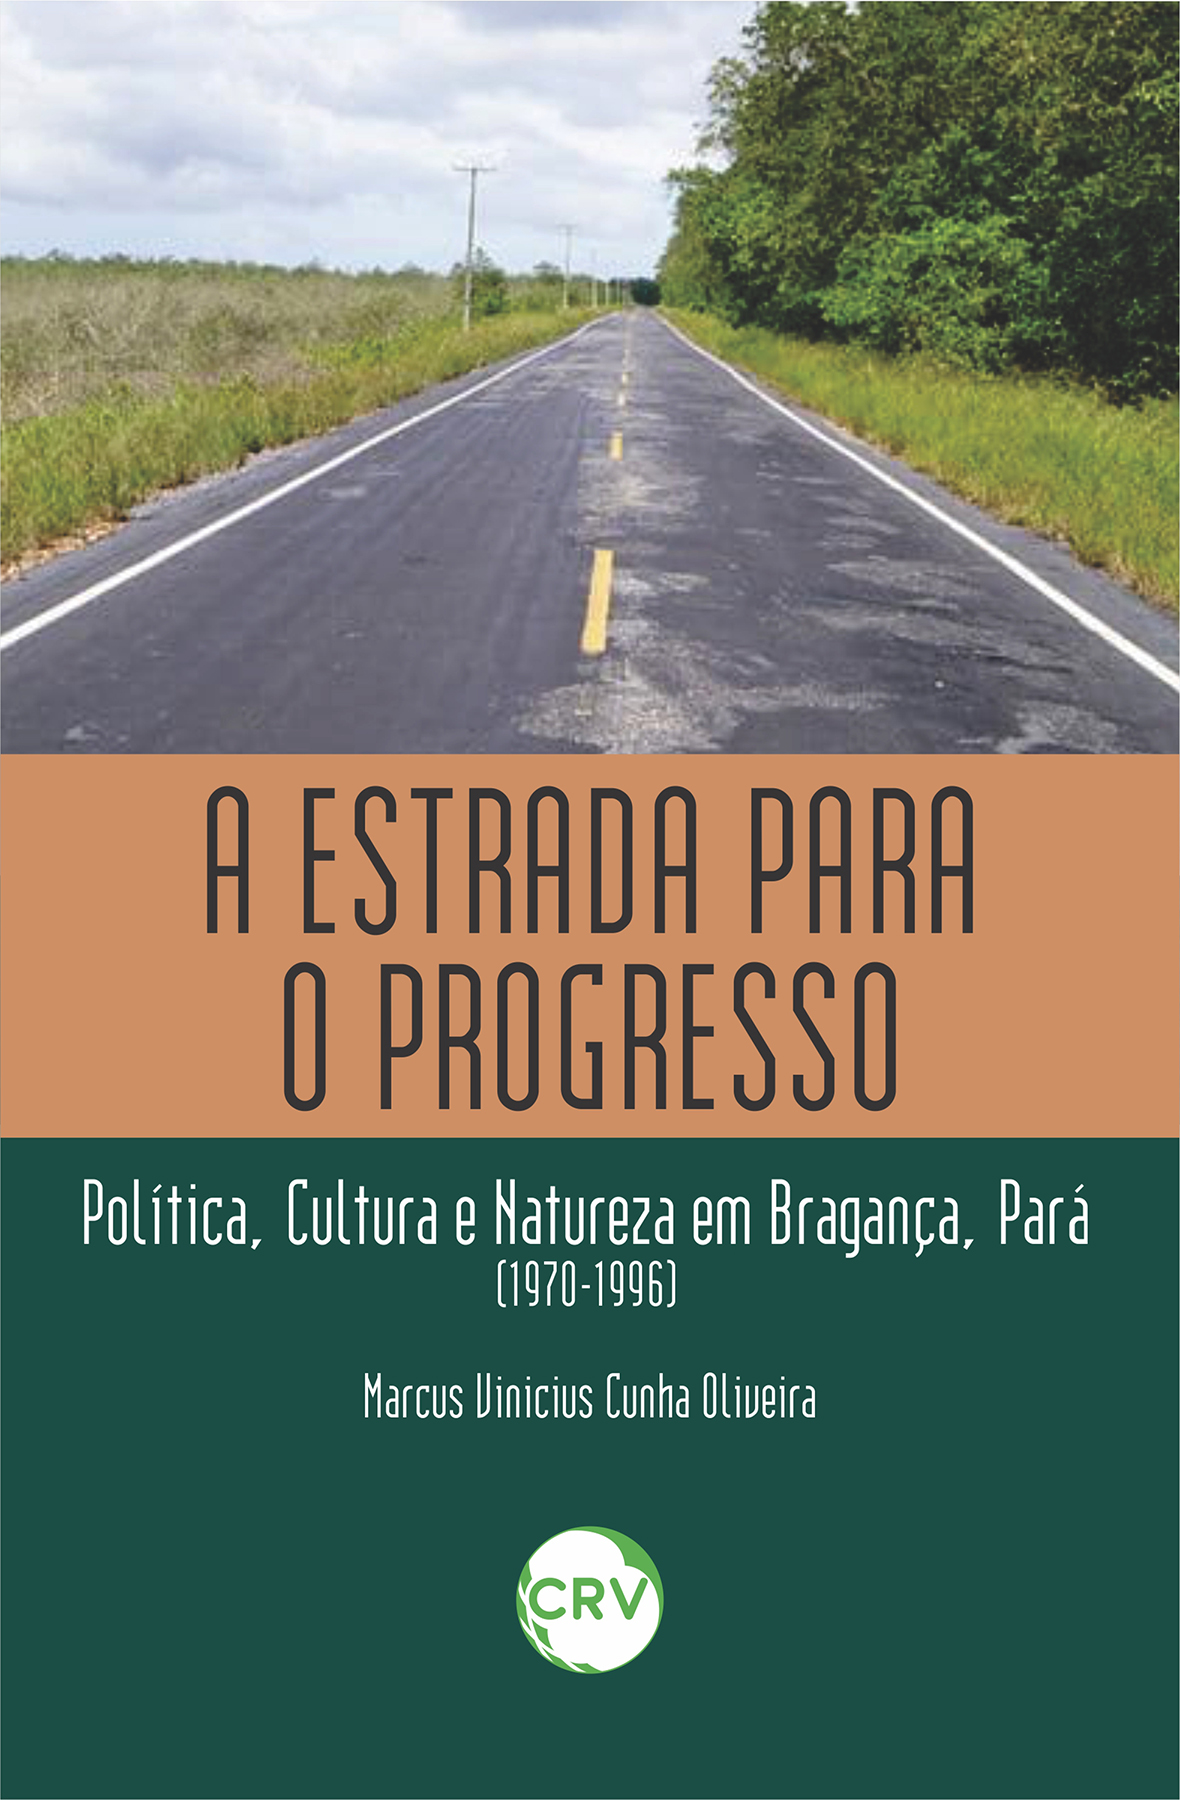 Capa do livro: A estrada para o progresso: <BR> Política, cultura e natureza em Bragança, Pará (1970-1996)